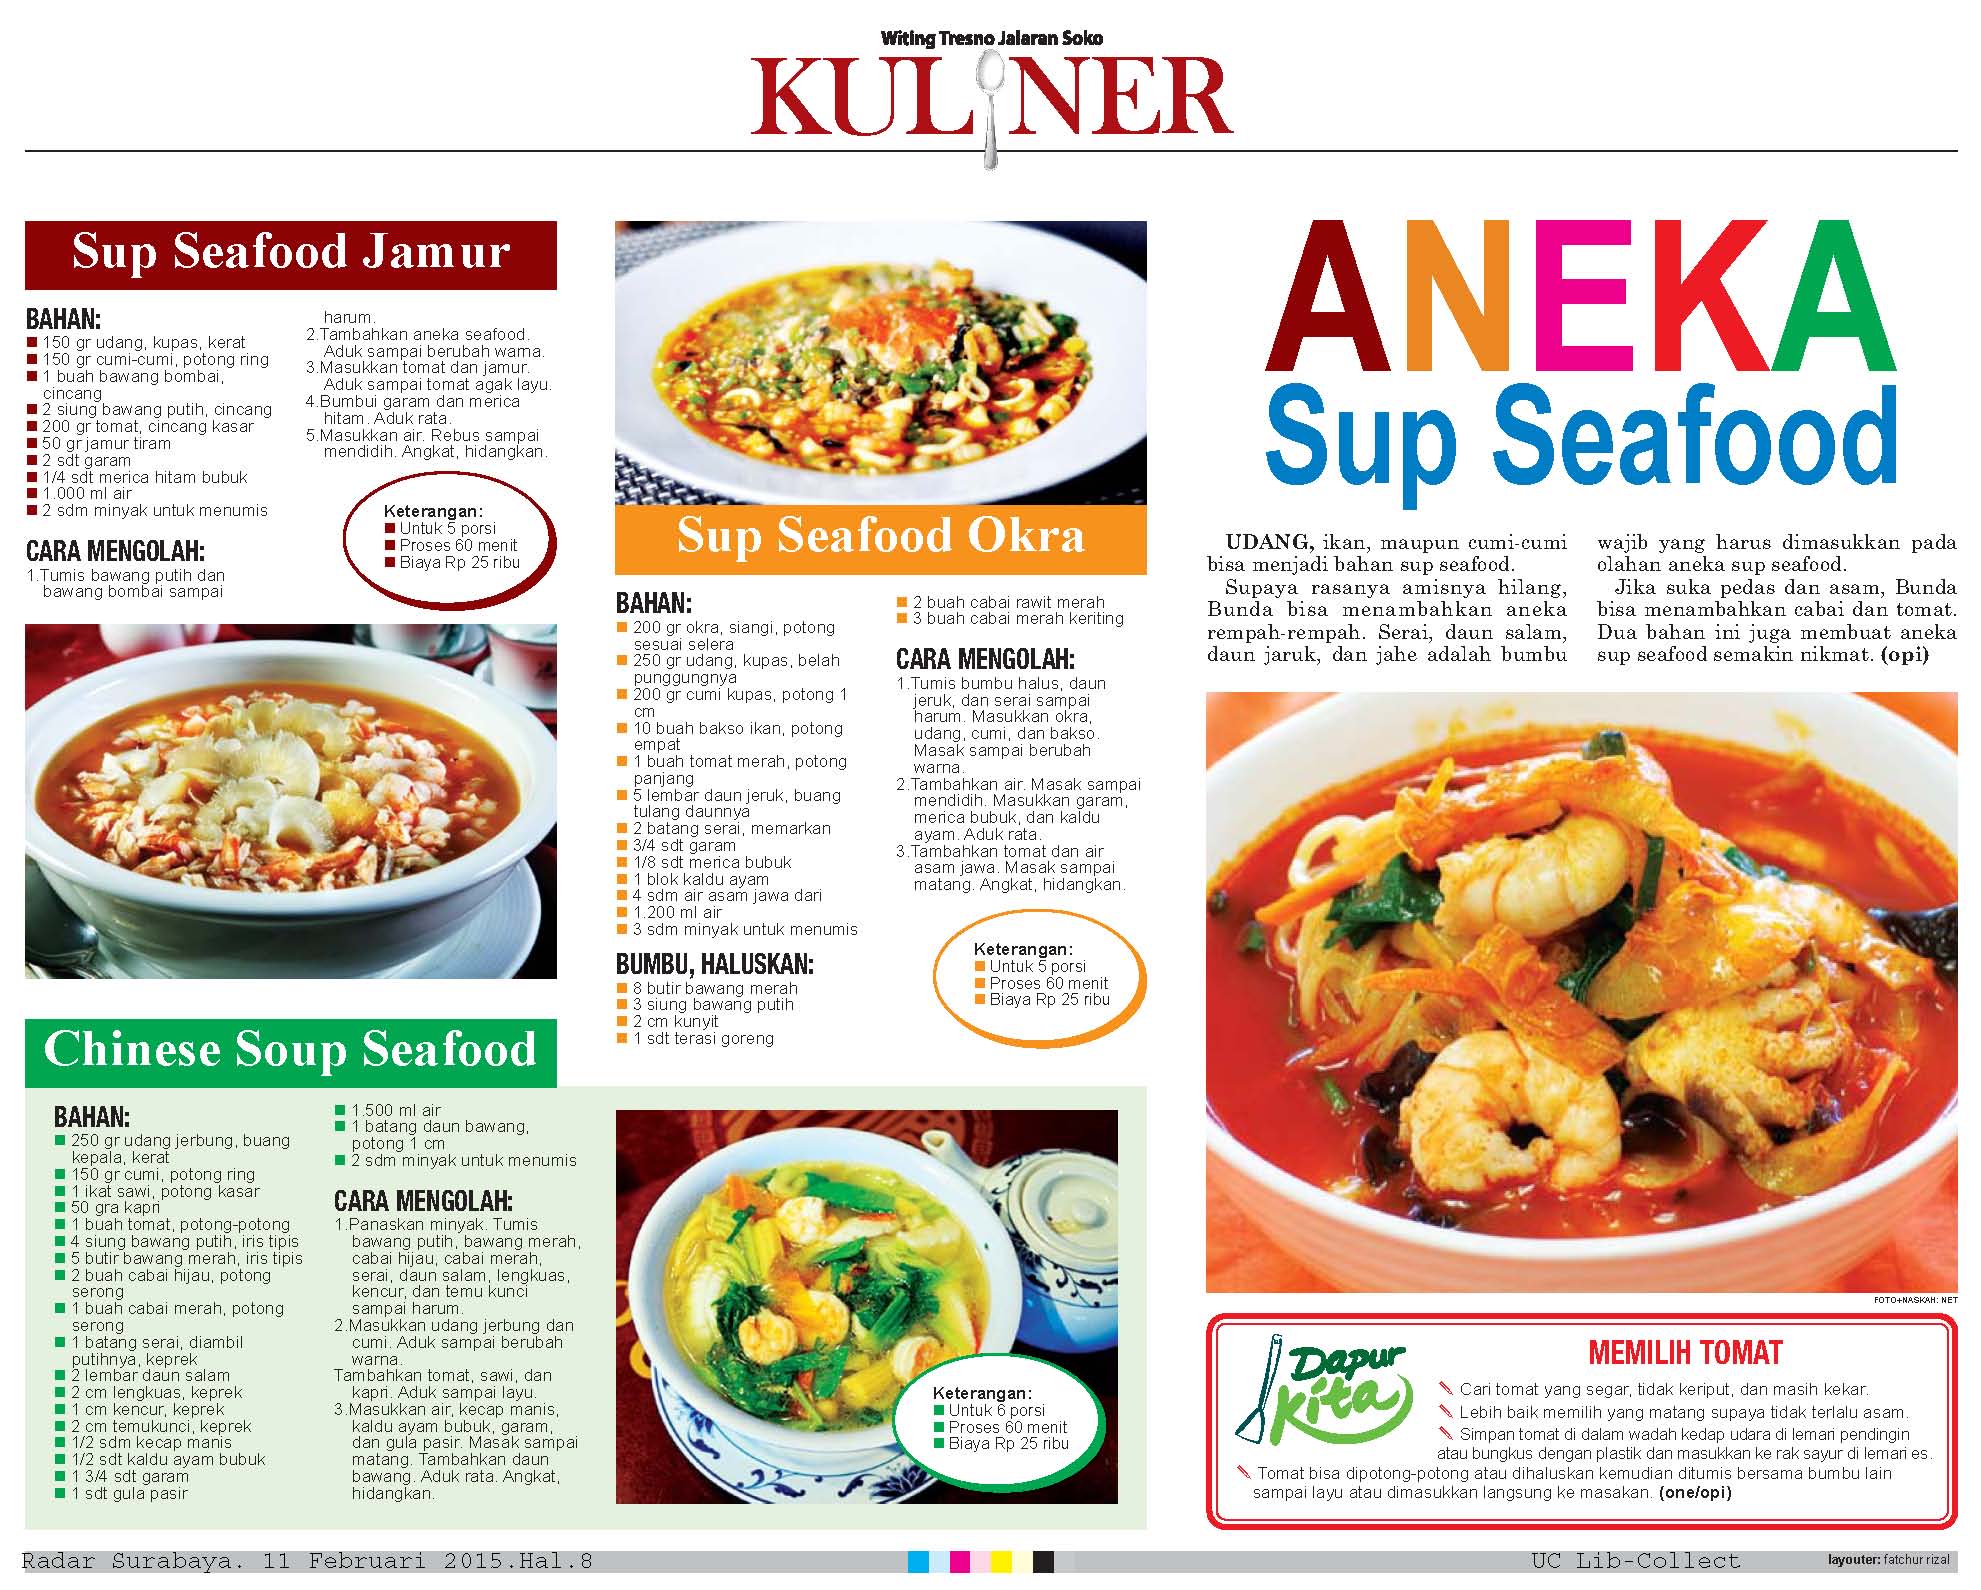 Aneka Sup Seafood Universitas Ciputra